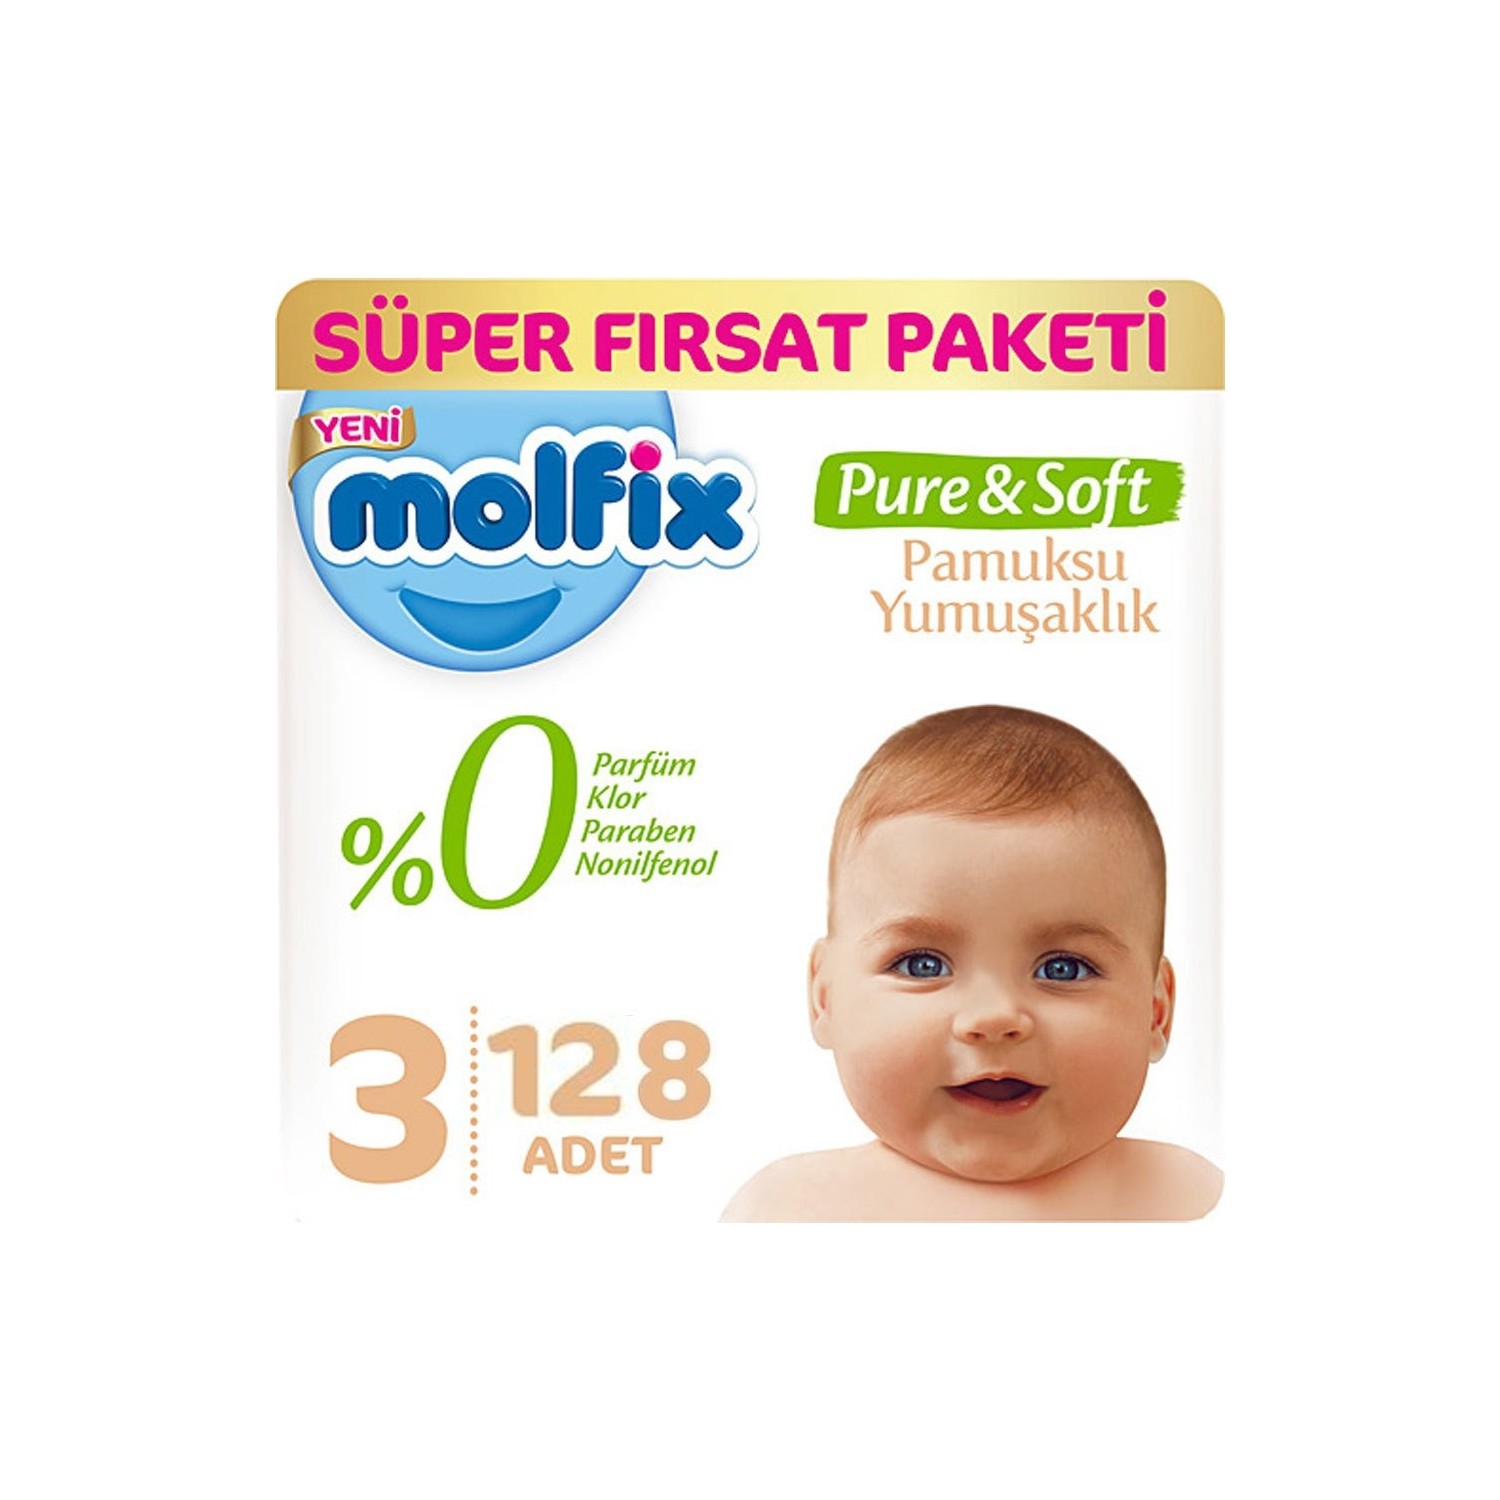 Molfix Pure&Soft 3 Beden Midi Aylık Fırsat Paketi 128 Adet